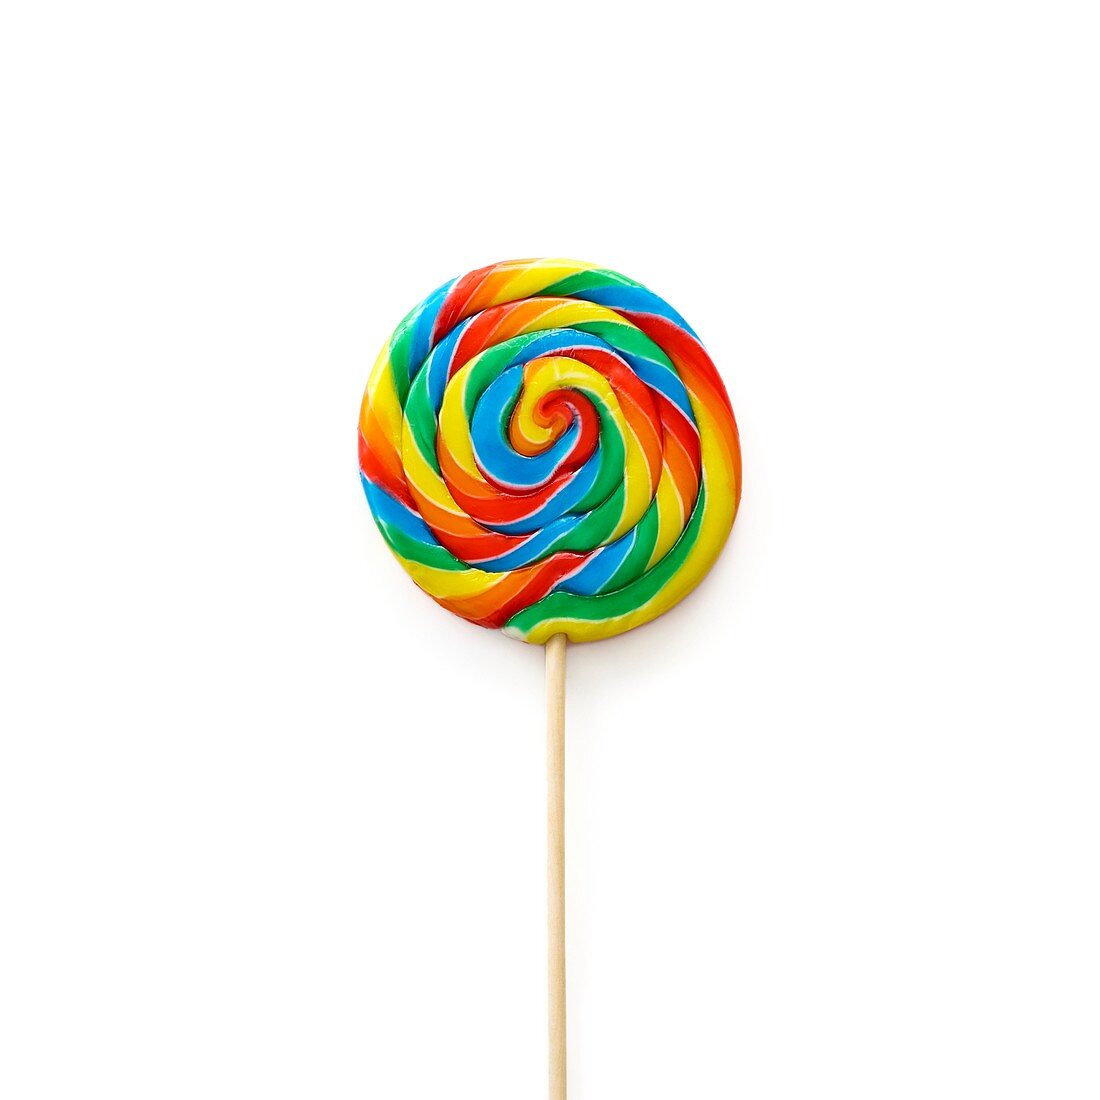 Bright coloured lollipop